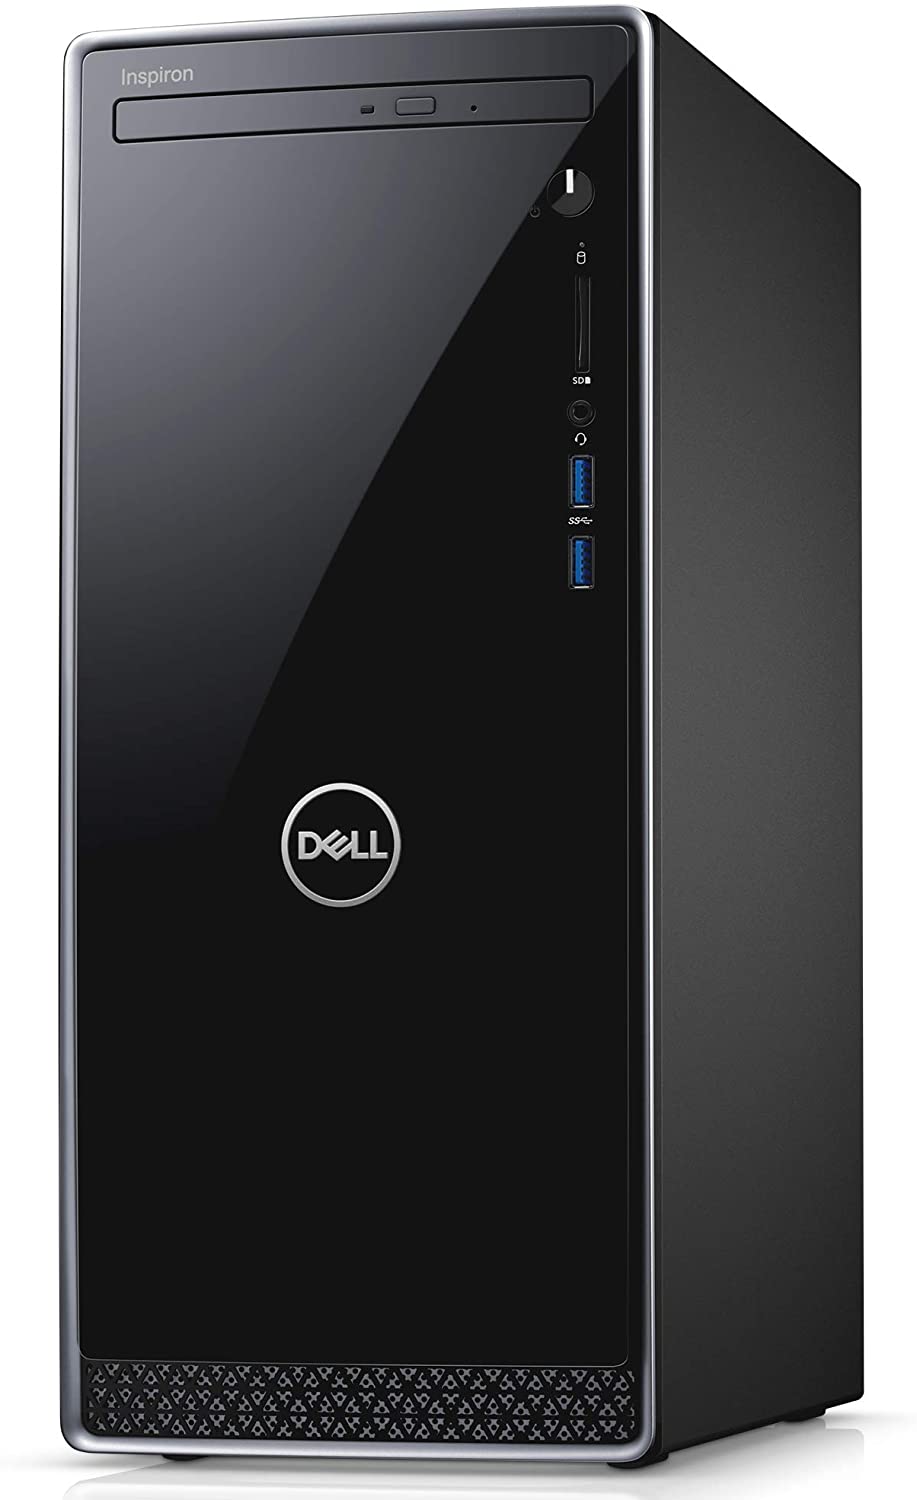 Dell デスクトップパソコン Inspiron 3671 Core i3 ブラック 20Q31/Win10/8GB/1TB HDD